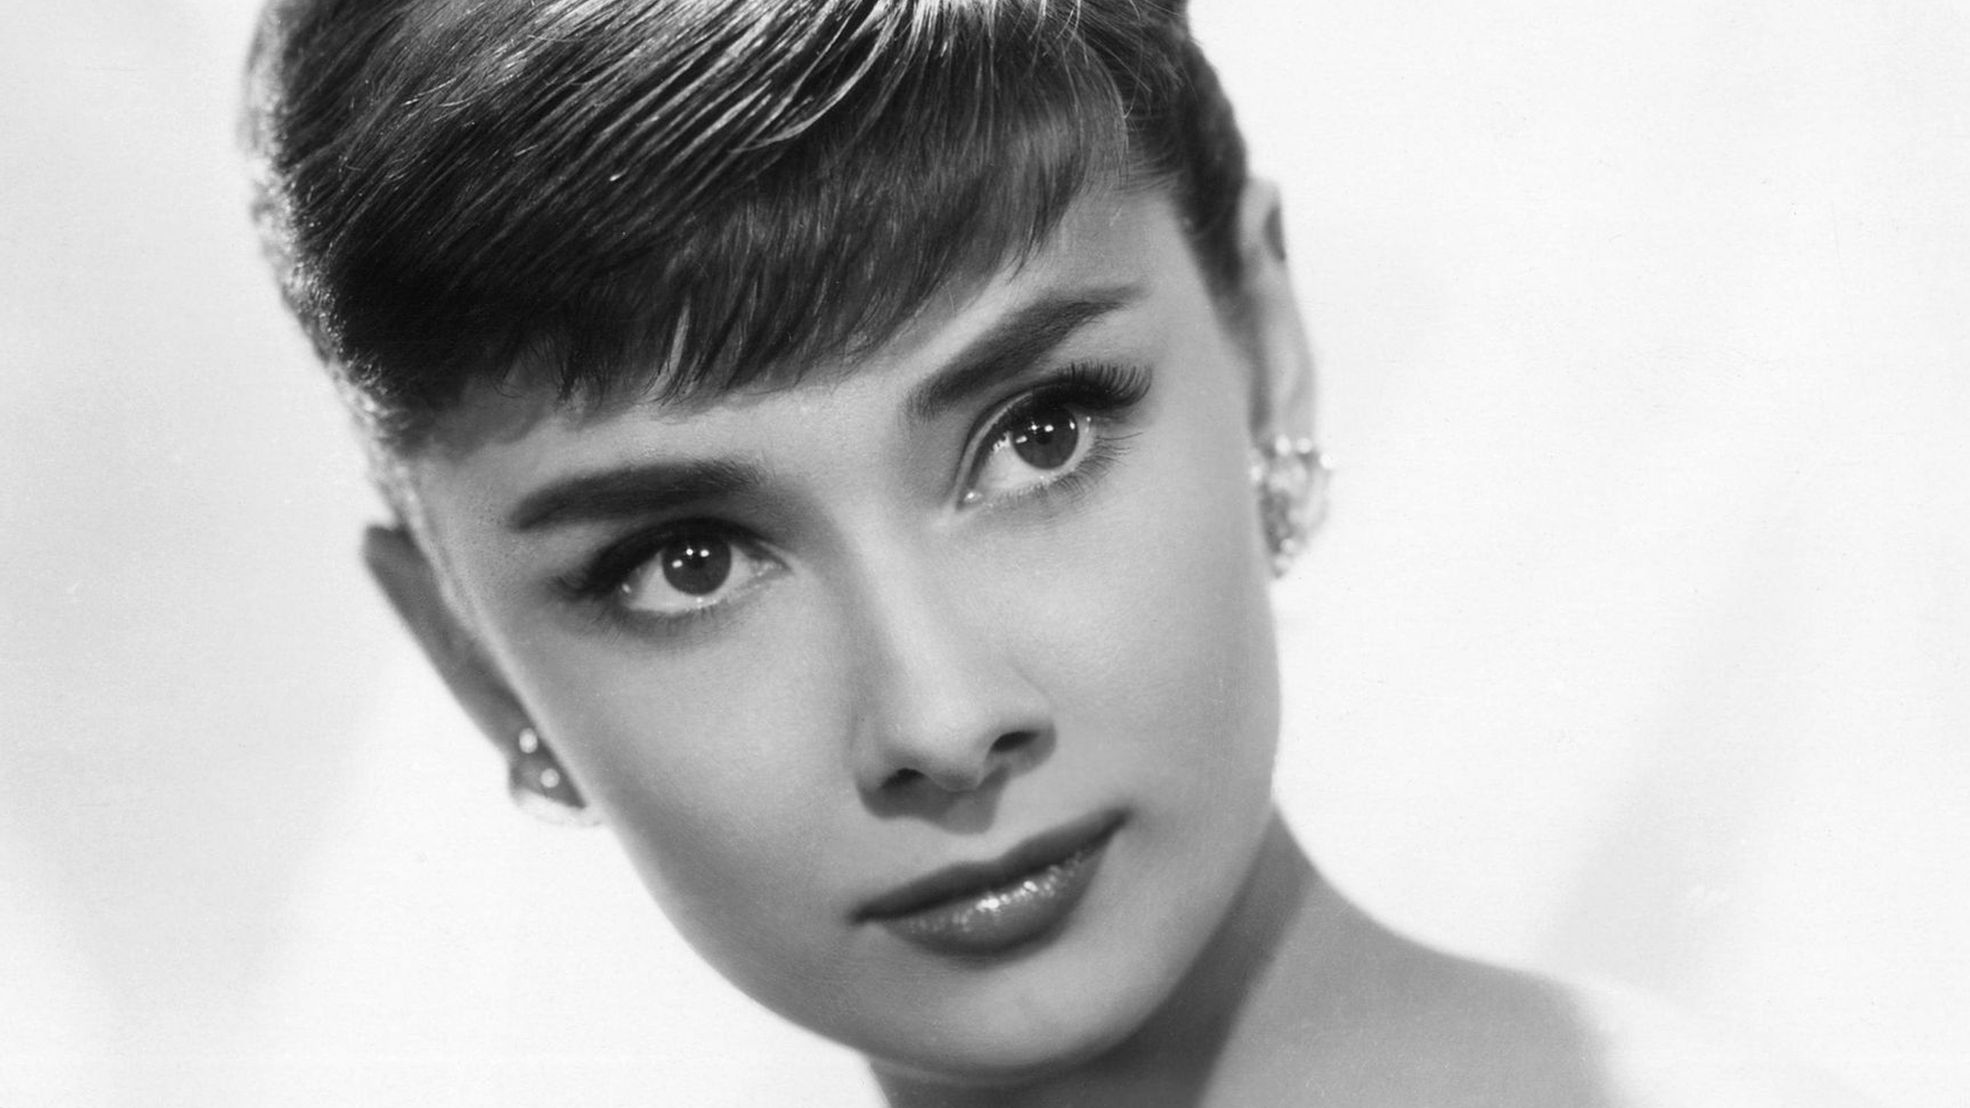 Acconciatura Audrey Hepburn per cigolii capelli corti